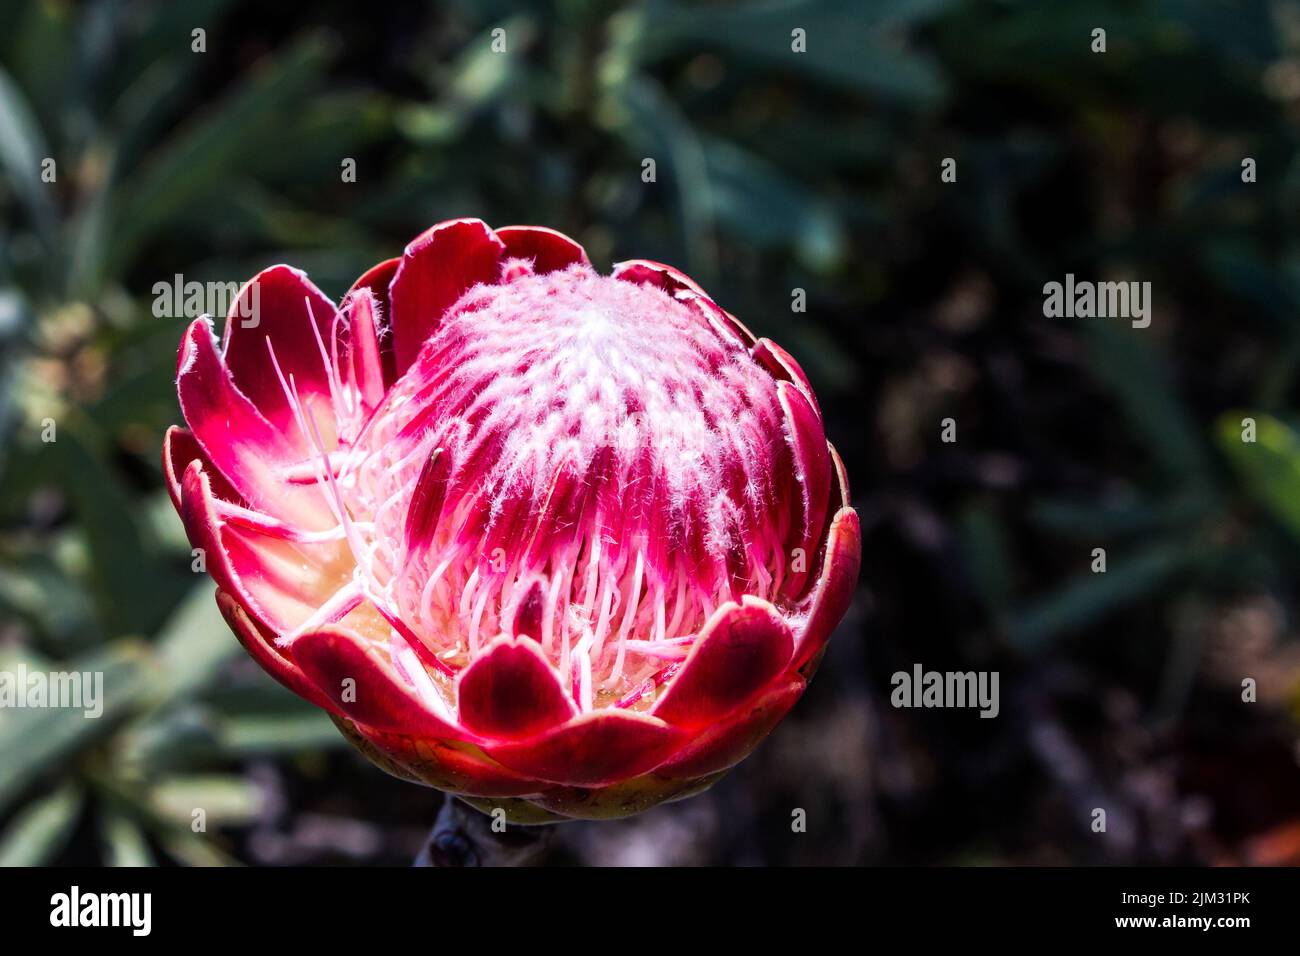 La cabeza de flor de un arbusto de azúcar rosa brillante, Protea caffra, en el parque suburbano Kloofendal, Roodepoort, Sudáfrica Foto de stock